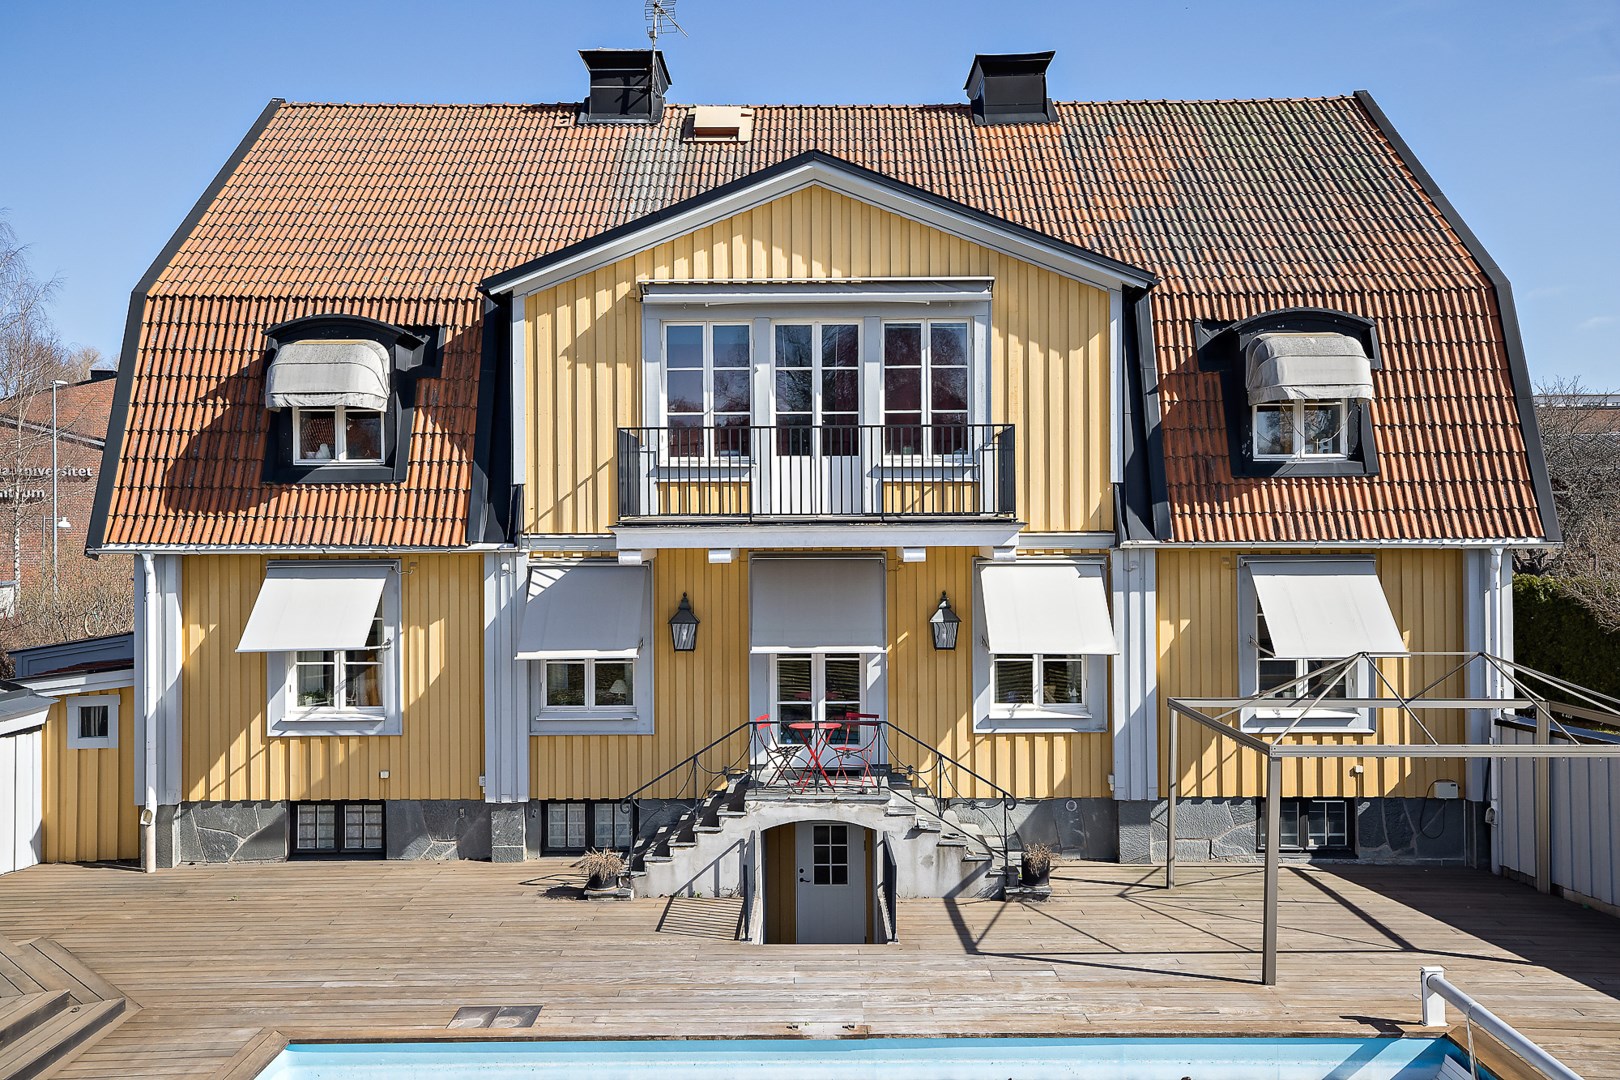 Bostadsbild från Villavägen 19, Kommande i Kåbo, Uppsala